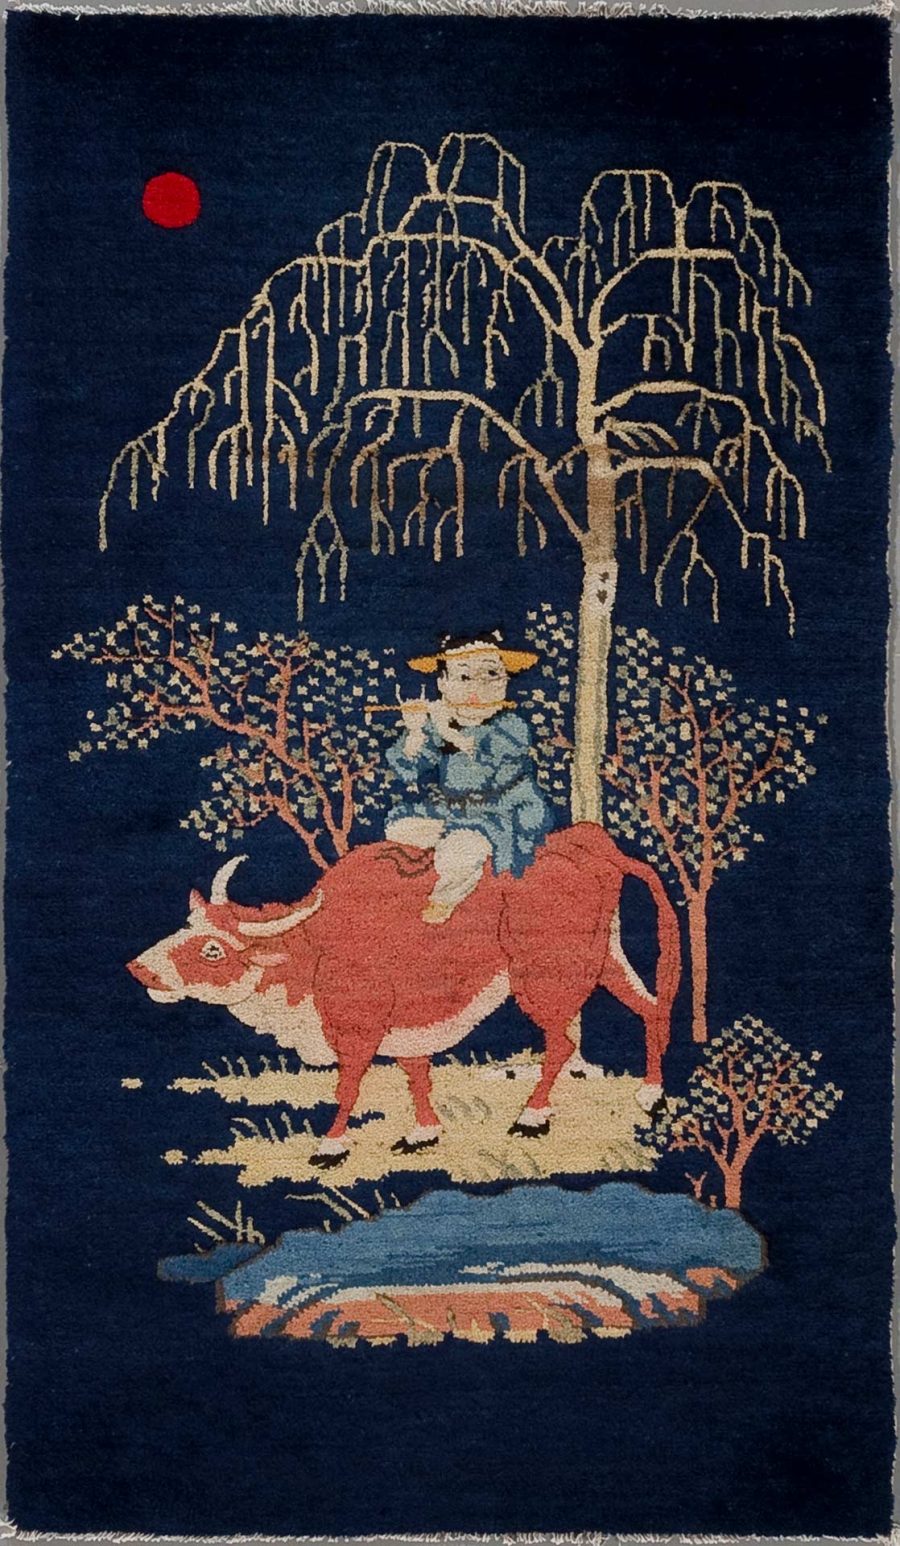 Alt Text: Textil-Kunstwerk mit stilisierter Darstellung eines Mädchens in blauer Kleidung, das auf einem roten Stier reitet, umgeben von einem großen weinenden Weidenbaum und weiteren Pflanzen, mit einem roten Sonnenpunkt im Hintergrund auf dunkelblauem Grund.